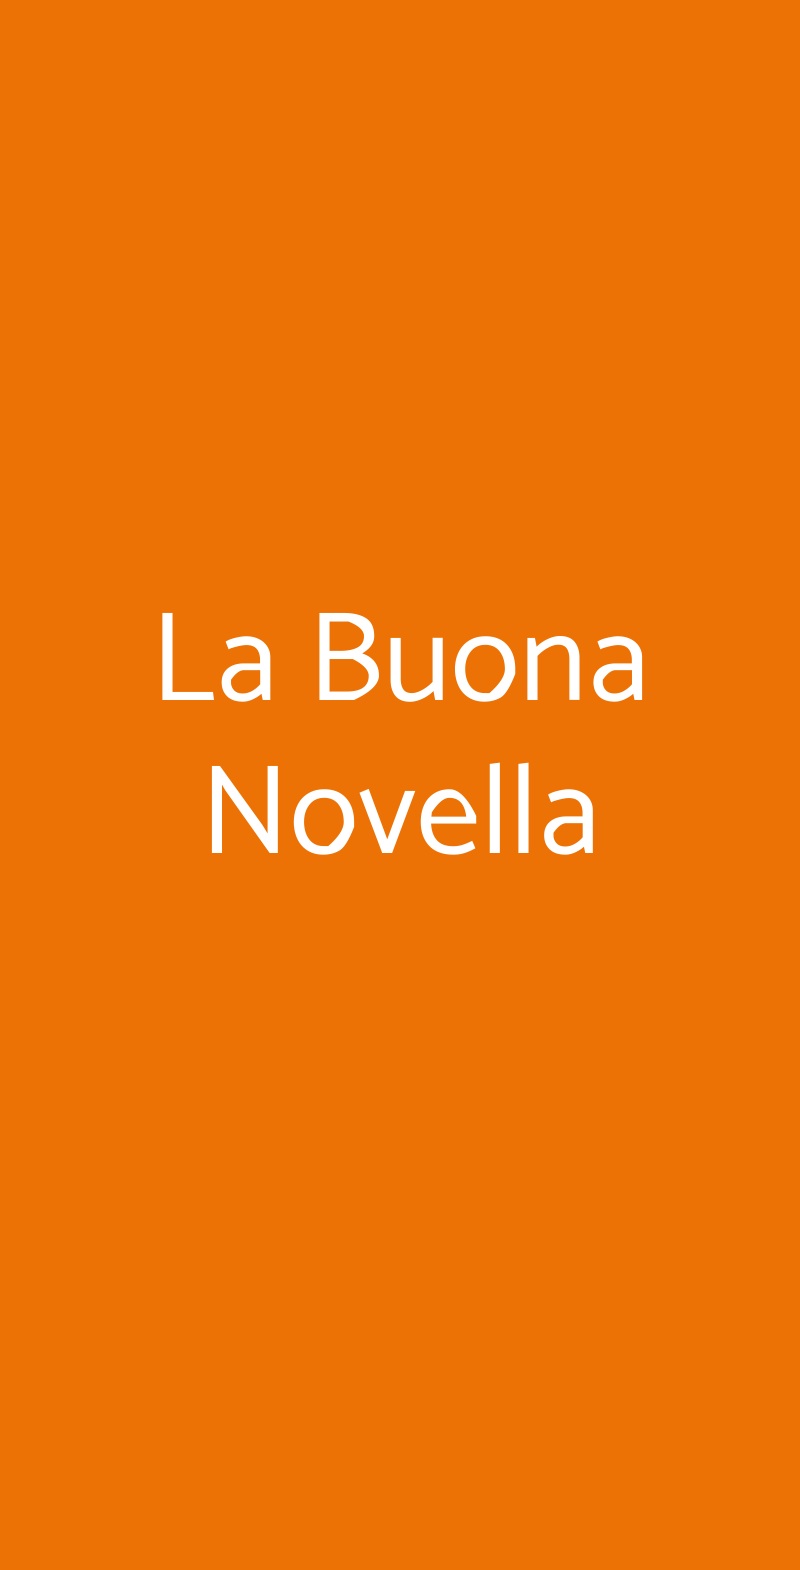 La Buona Novella Firenze menù 1 pagina